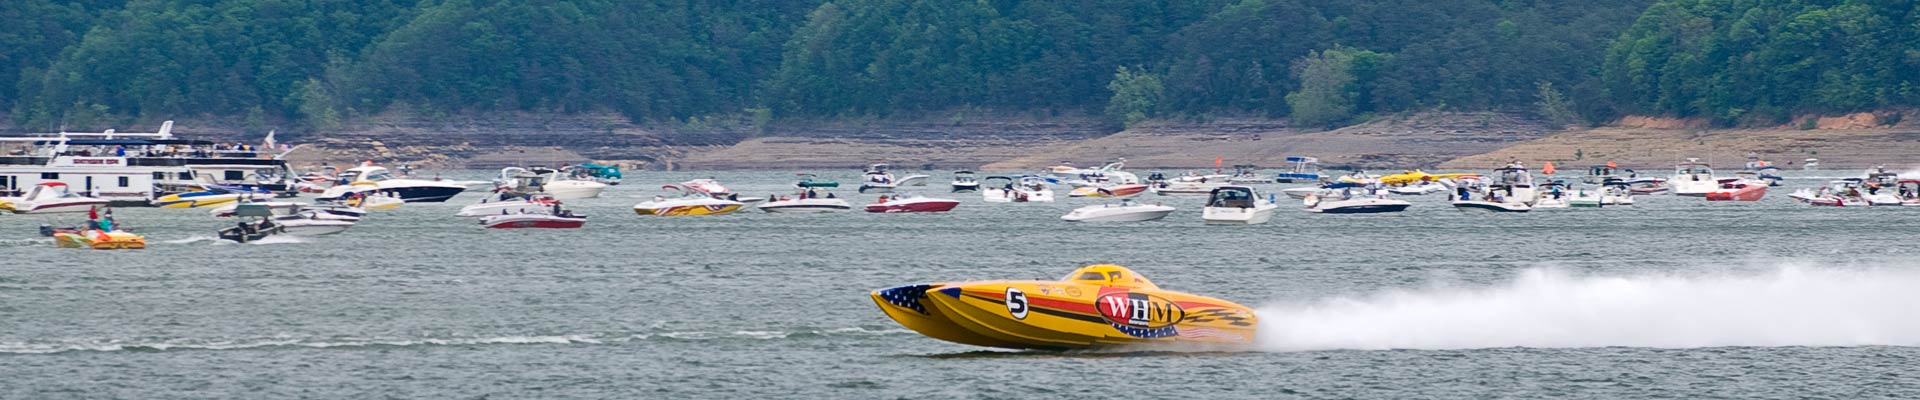 slide-020-lake-boat-race